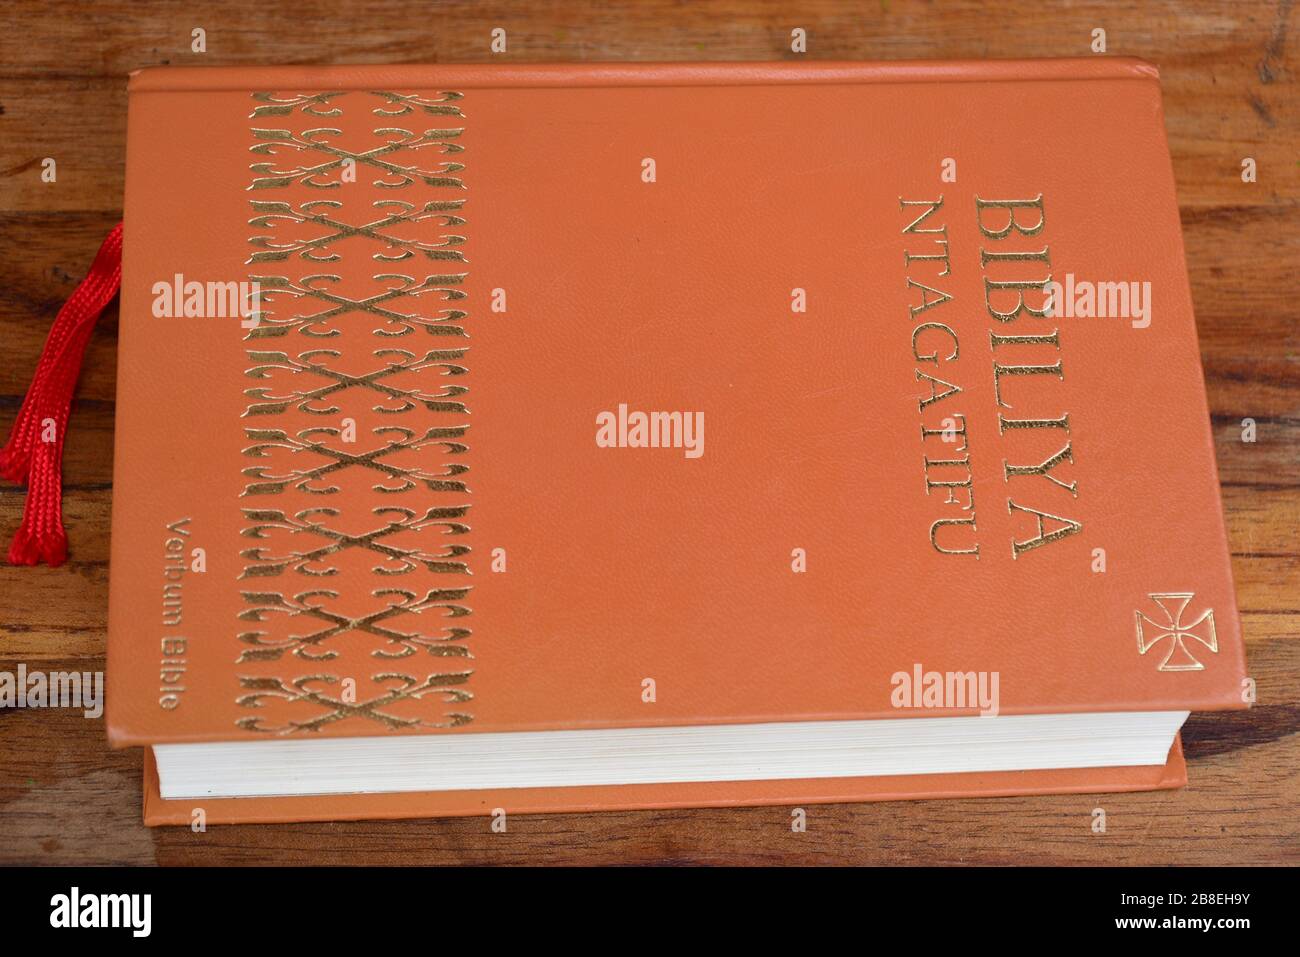 Kinyarwanda language Catholic Holy Bible on wooden table Stock Photo